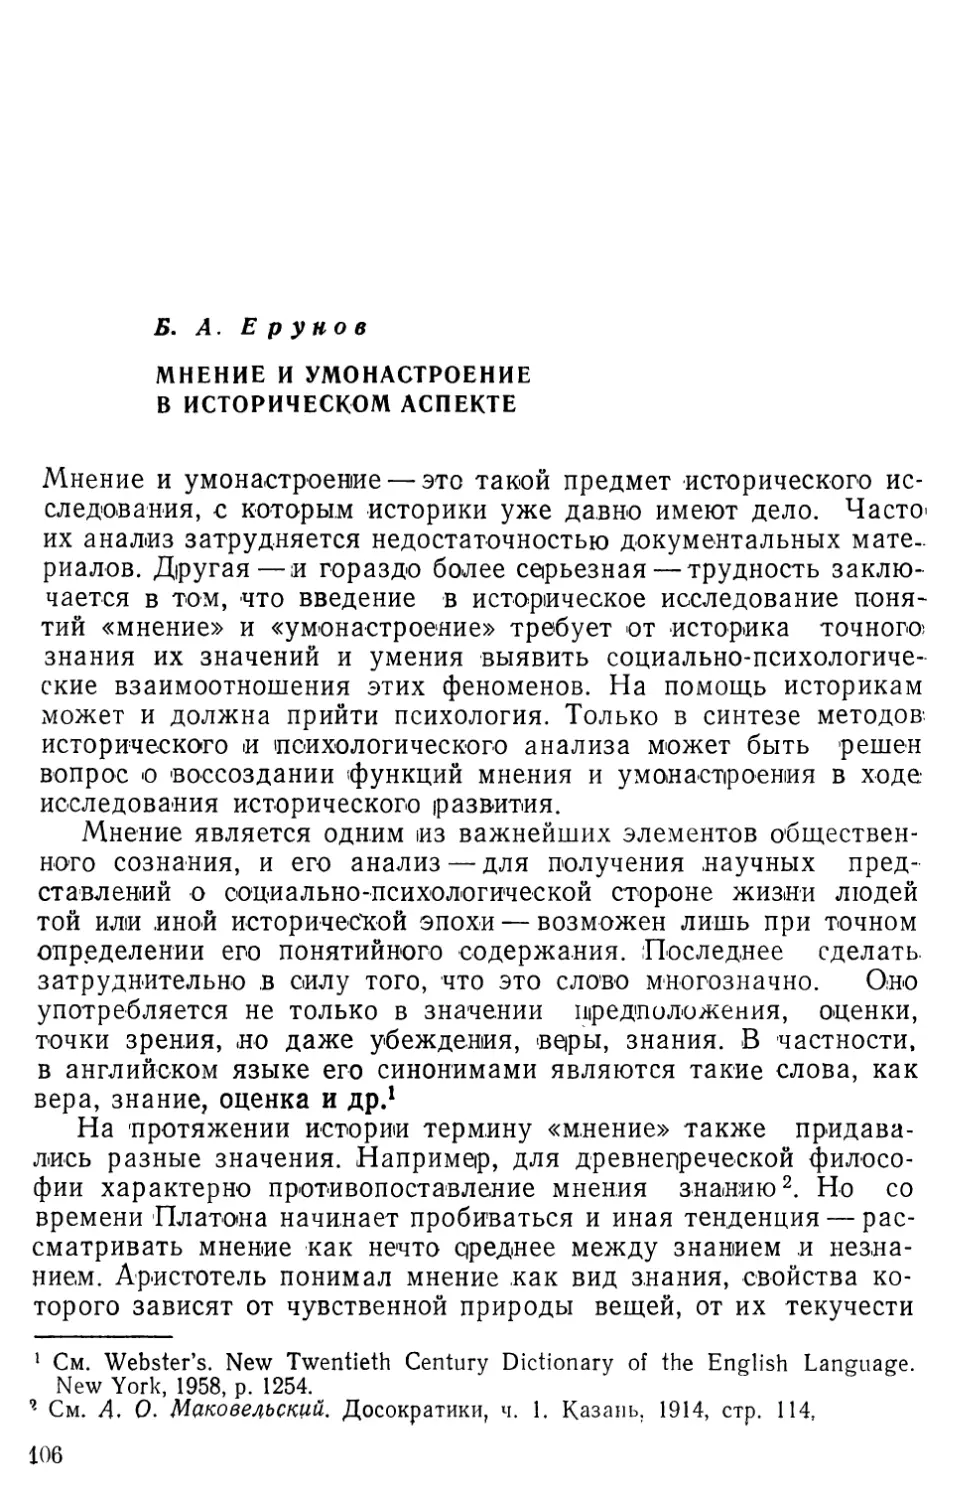 Б.Л.Ерунов. Мнение и умонастроение в историческом аспекте